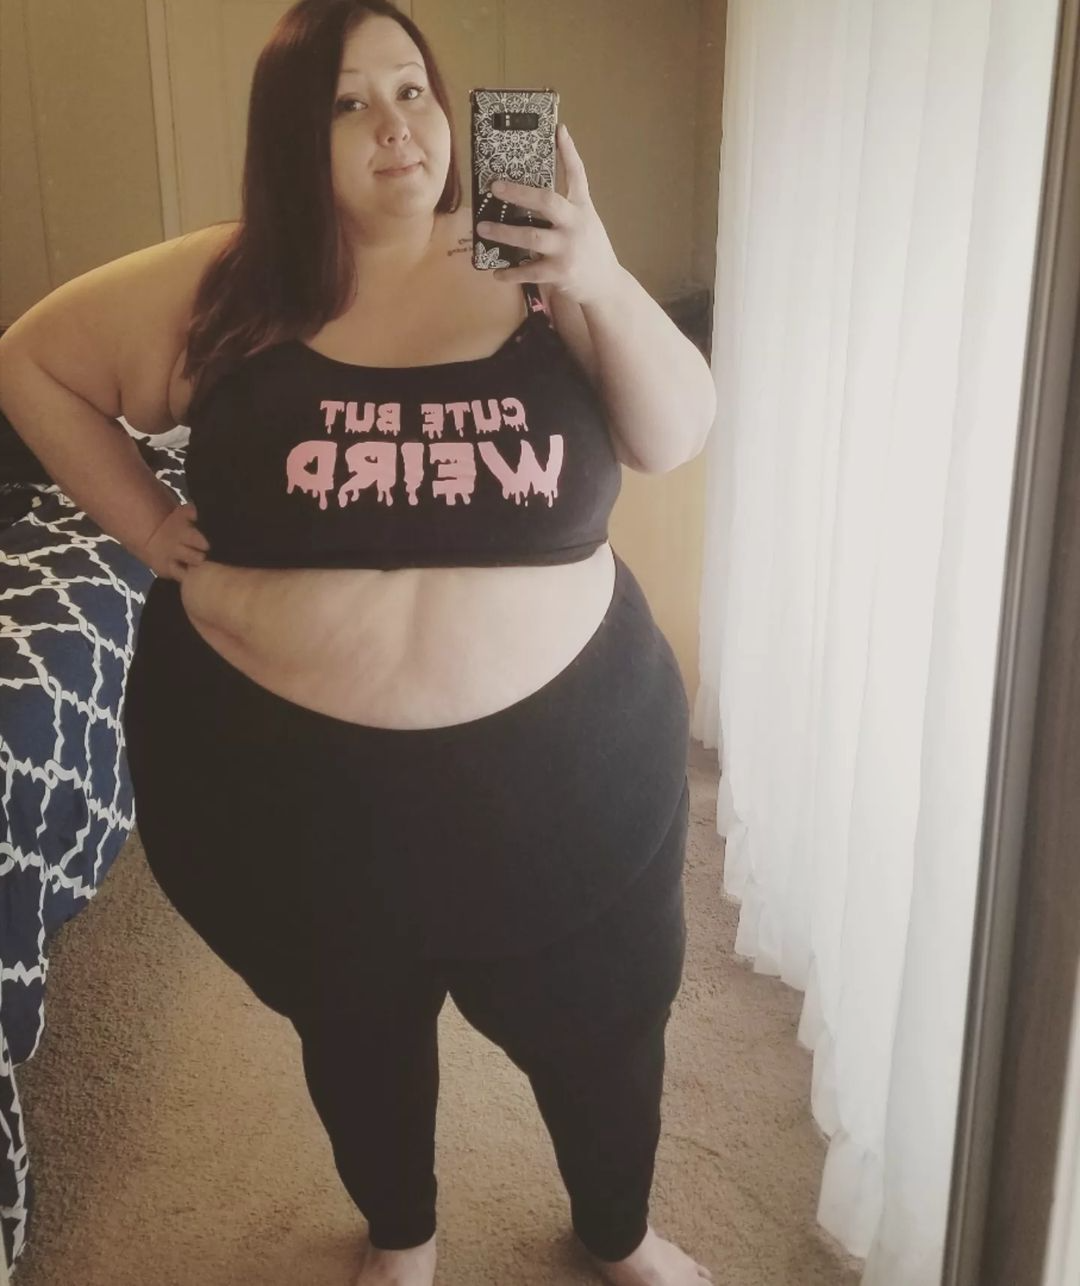 obese girl fat selfie meme Blank Meme Template